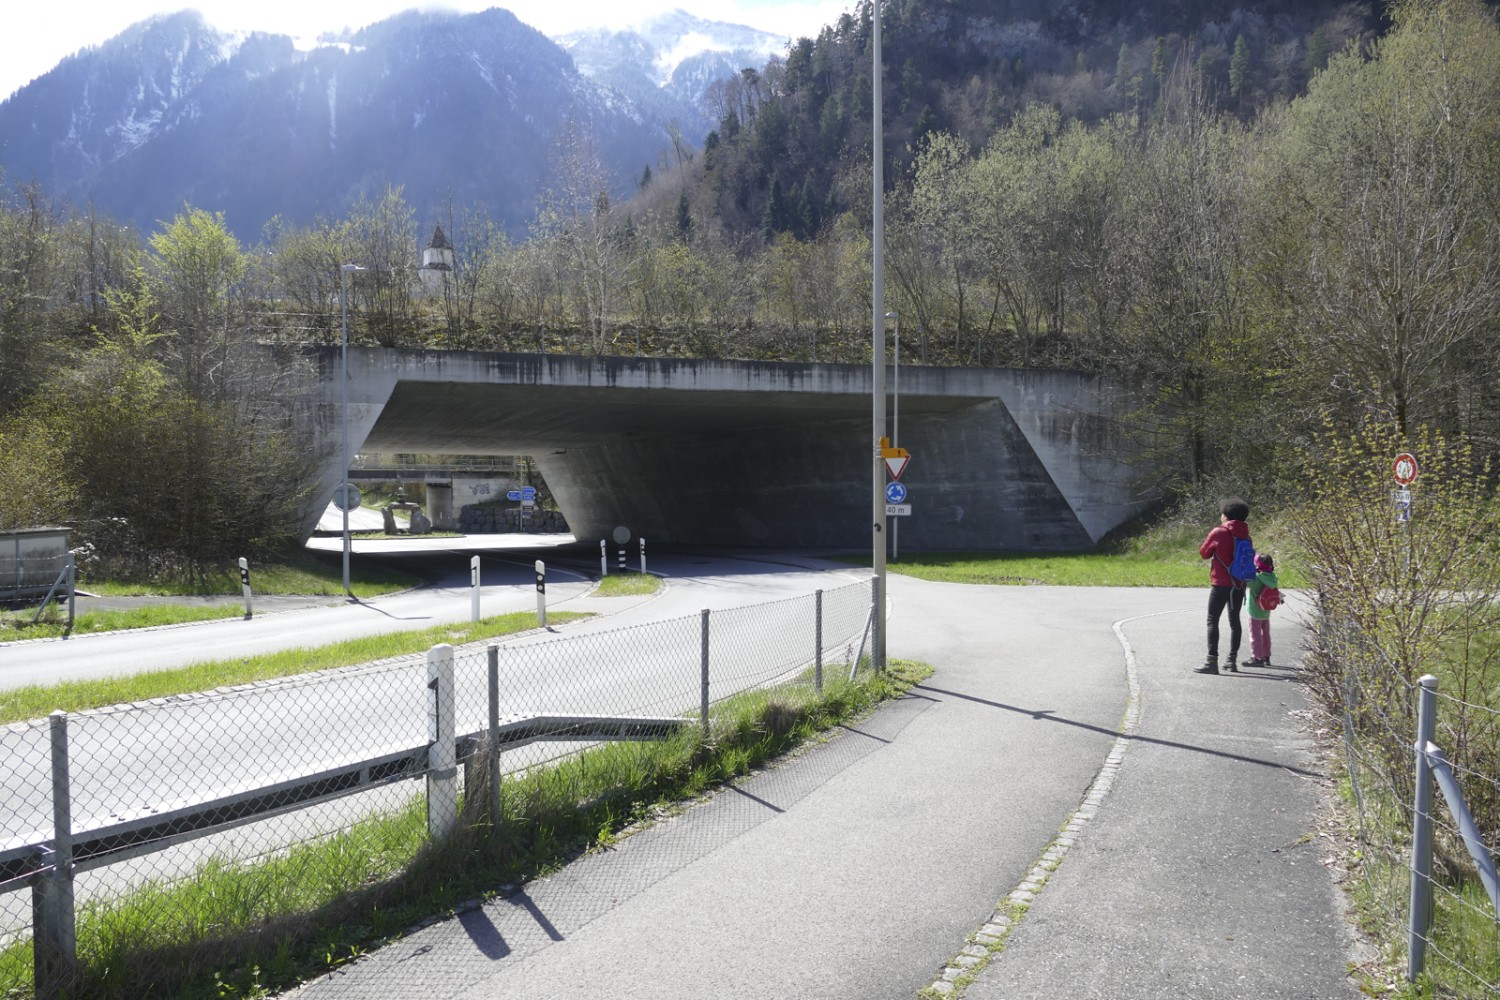 Entre le barrage et le foyer de Herrenmätteli, l’itinéraire longe brièvement des routes fréquentées. Photo: Kim Bütikofer 